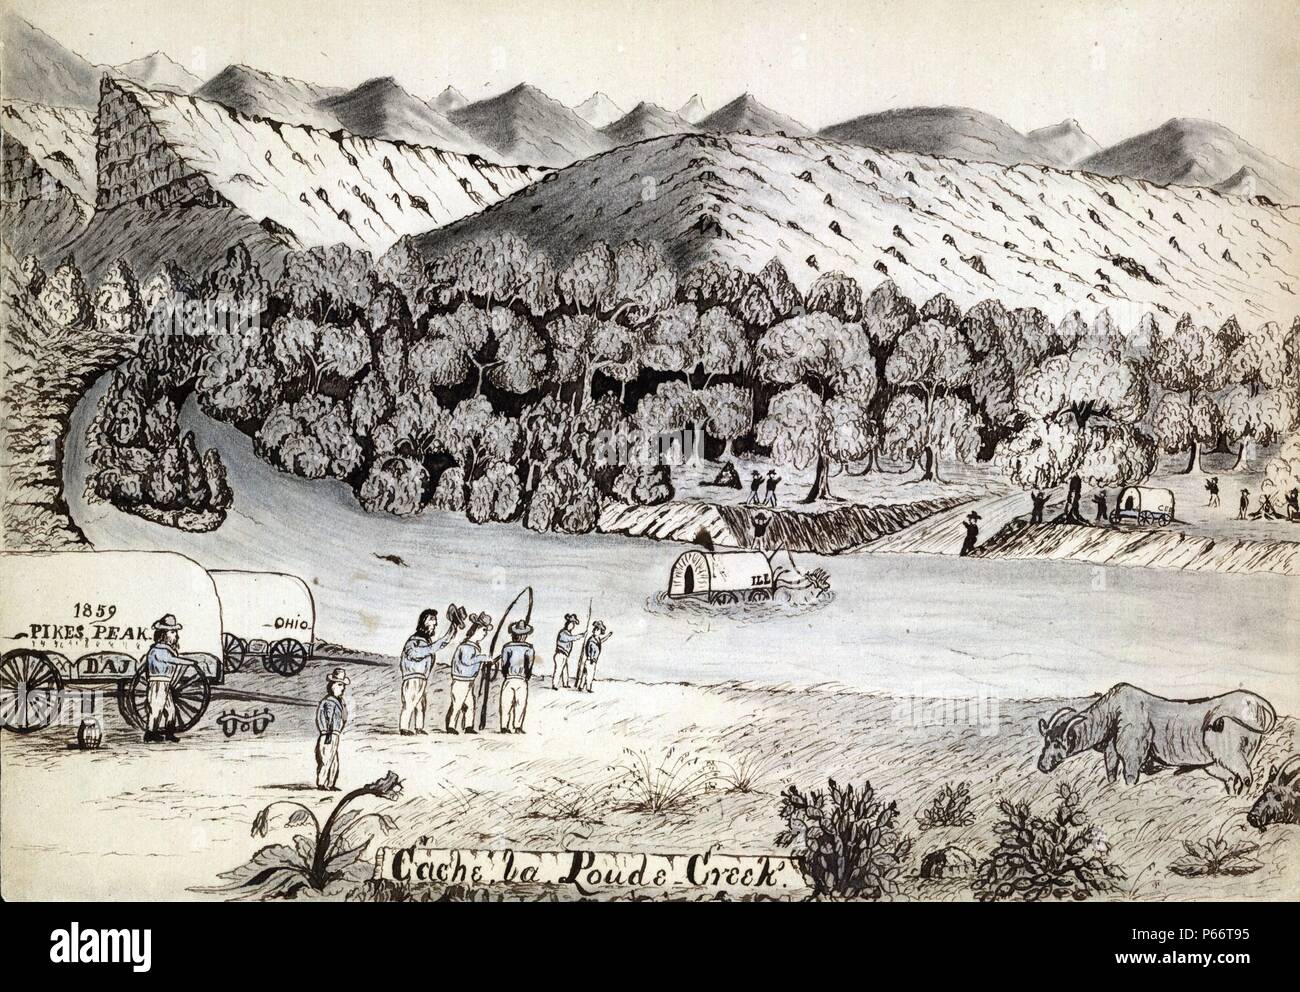 Cache la Poudre Creek von Daniel Jenks, 1827-1869, Künstler: 1859. Zeichnung zeigt ein Planwagen, mit der Aufschrift "krank", Von zwei Ochsen, die einen Fluß überquert, in die Berge getrieben. Auf der anderen Seite des Flusses sind zwei Männer, die durch ein Feuer, ein Planwagen und stehende Männer und deutete auf den Wagen in der Mitte des Flusses. Auf der in der Nähe der Ufer Männer neben.500 Wagen stehen, eine mit der Aufschrift "Ohio", die anderen, '1859 Pikes Peak." Ochs weidet rechts unten. Dieser Strom ist in der Nähe der heutigen Ft. Collins, Colorado. Jenks Angekommen im Camp 52 am Montag, 30. Mai 1859. Stockfoto